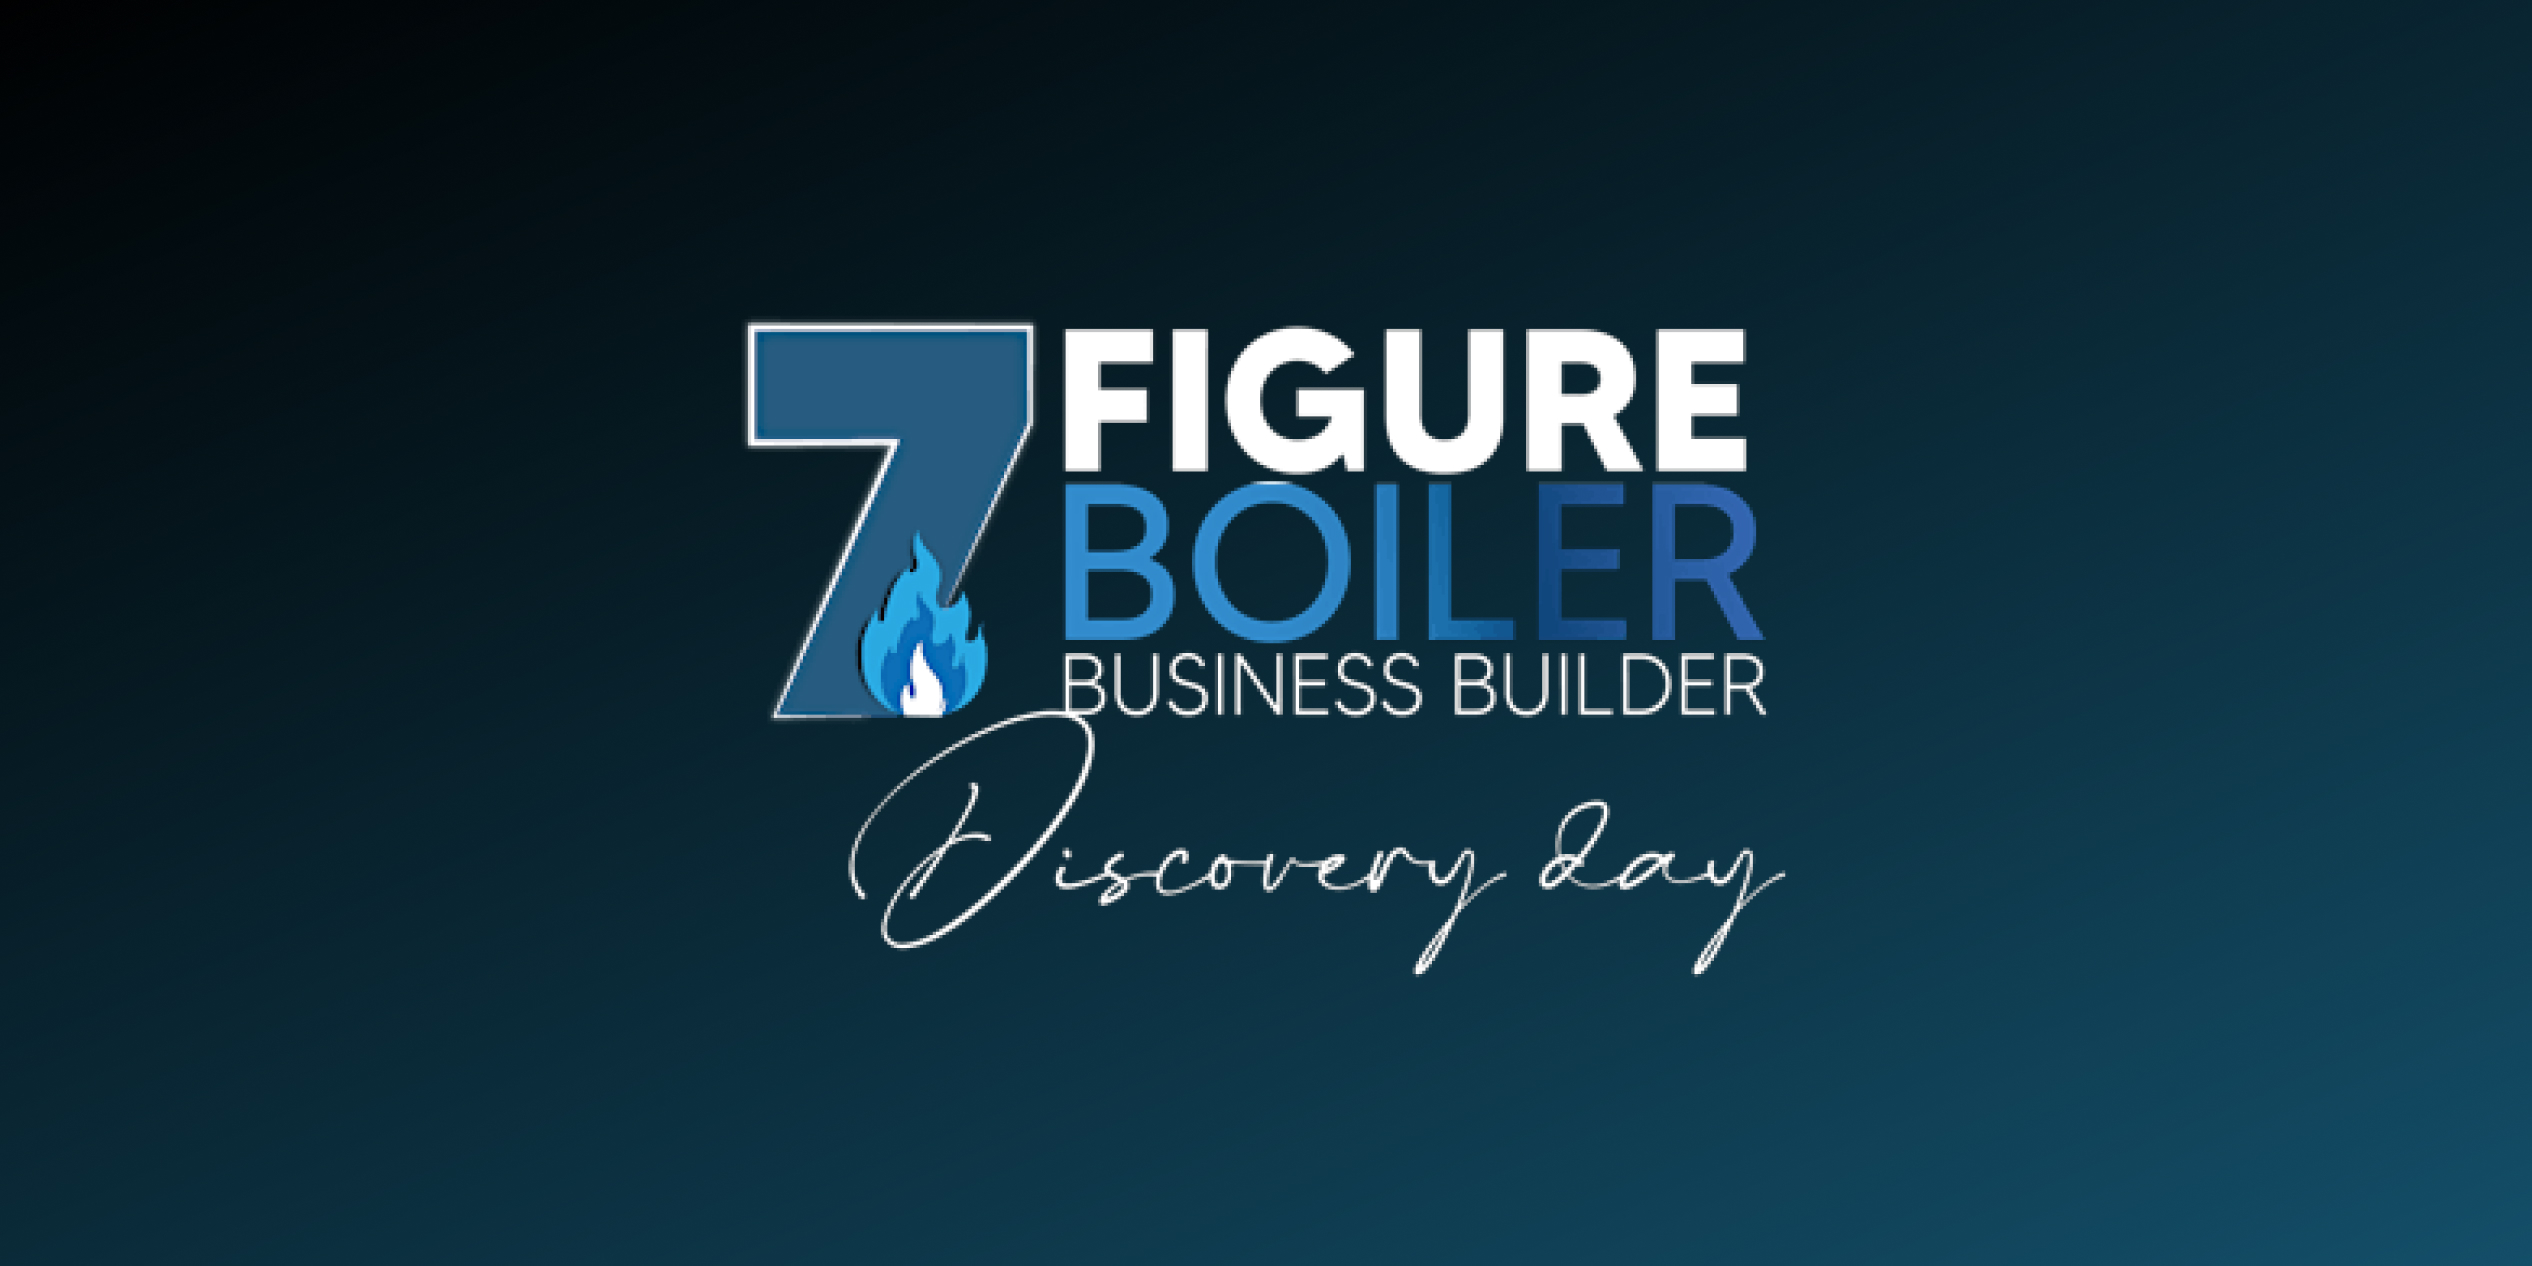 Logo of 7 Figure Business Builder on black background